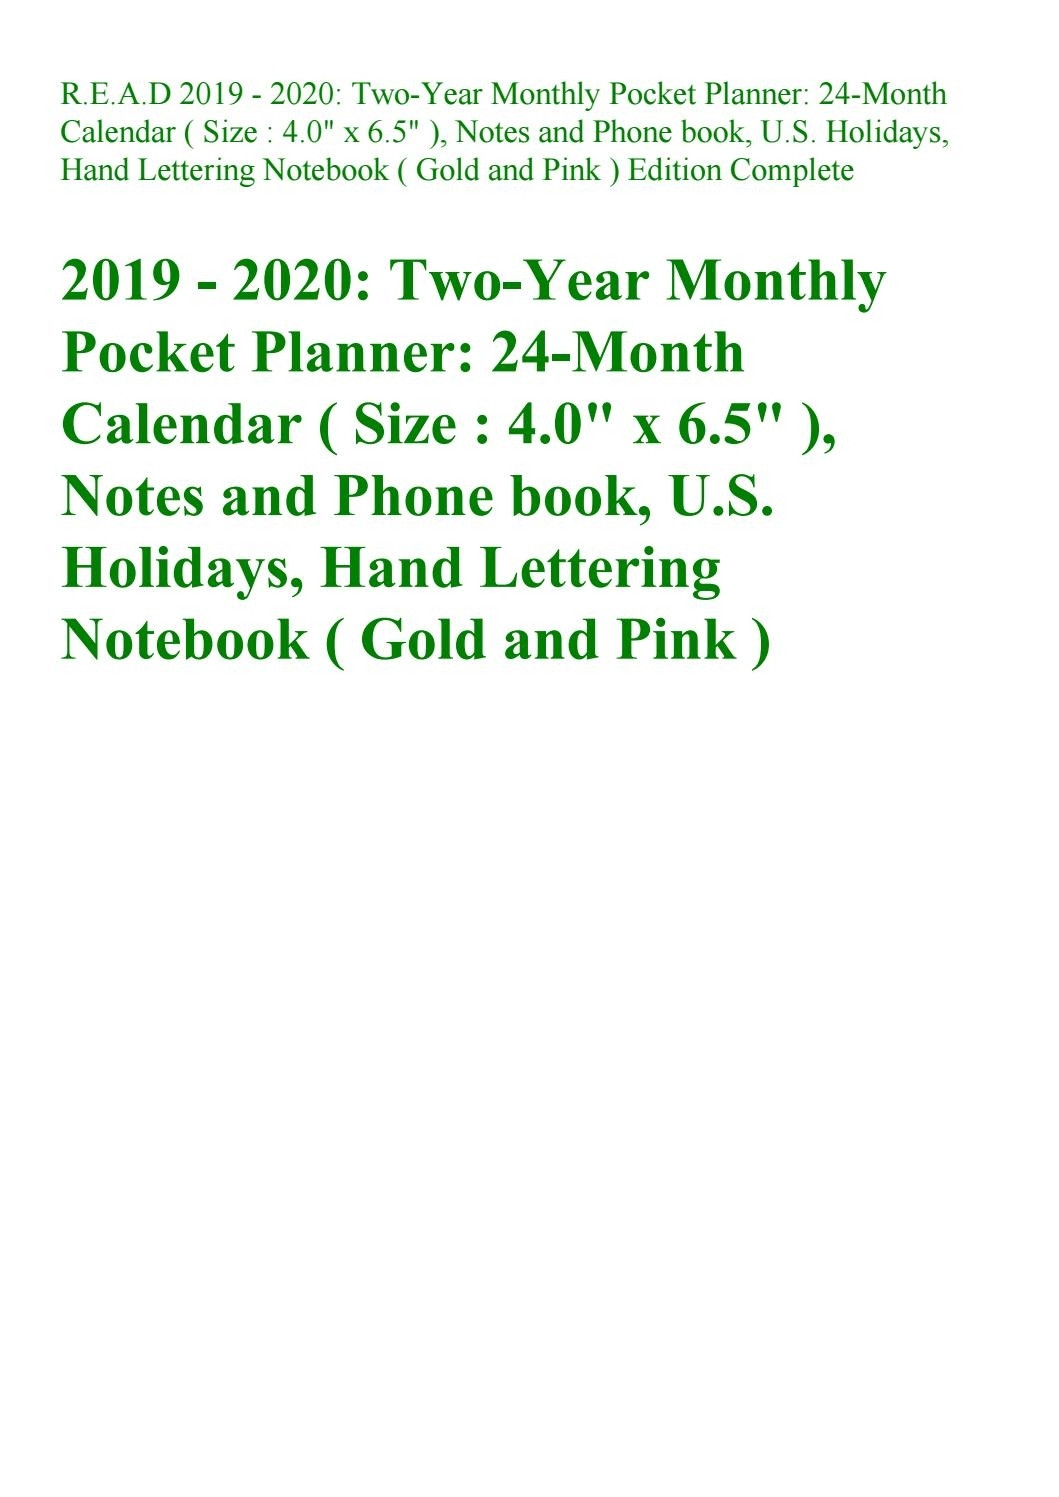 U Of R Calendar 2020 | Calendar Printables Free Templates